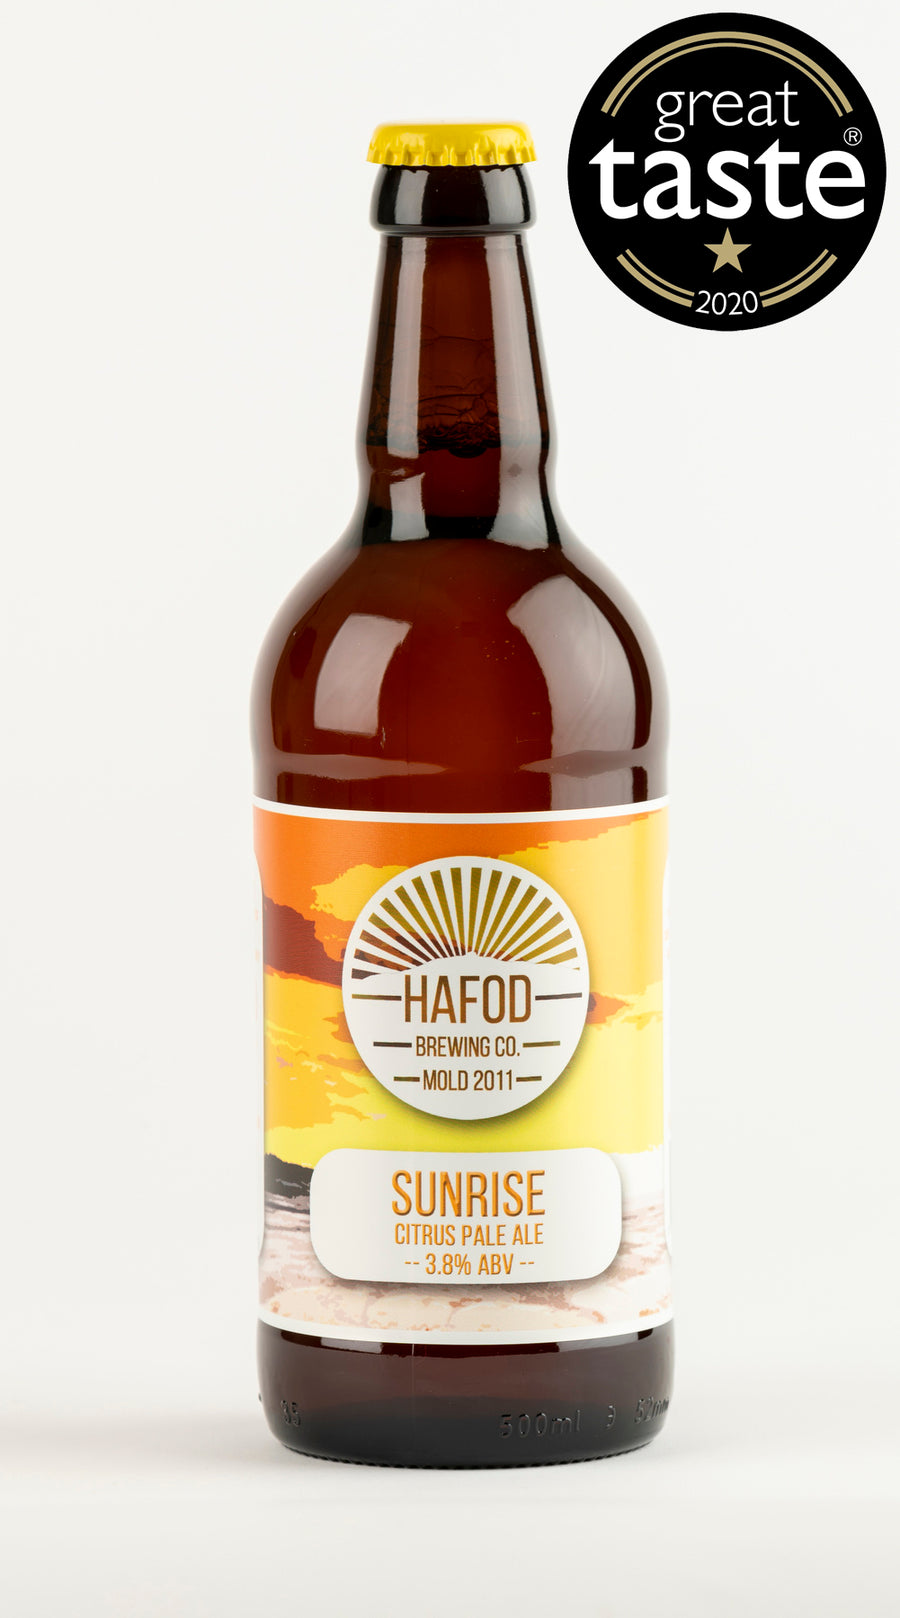 Sunrise - Pale Ale